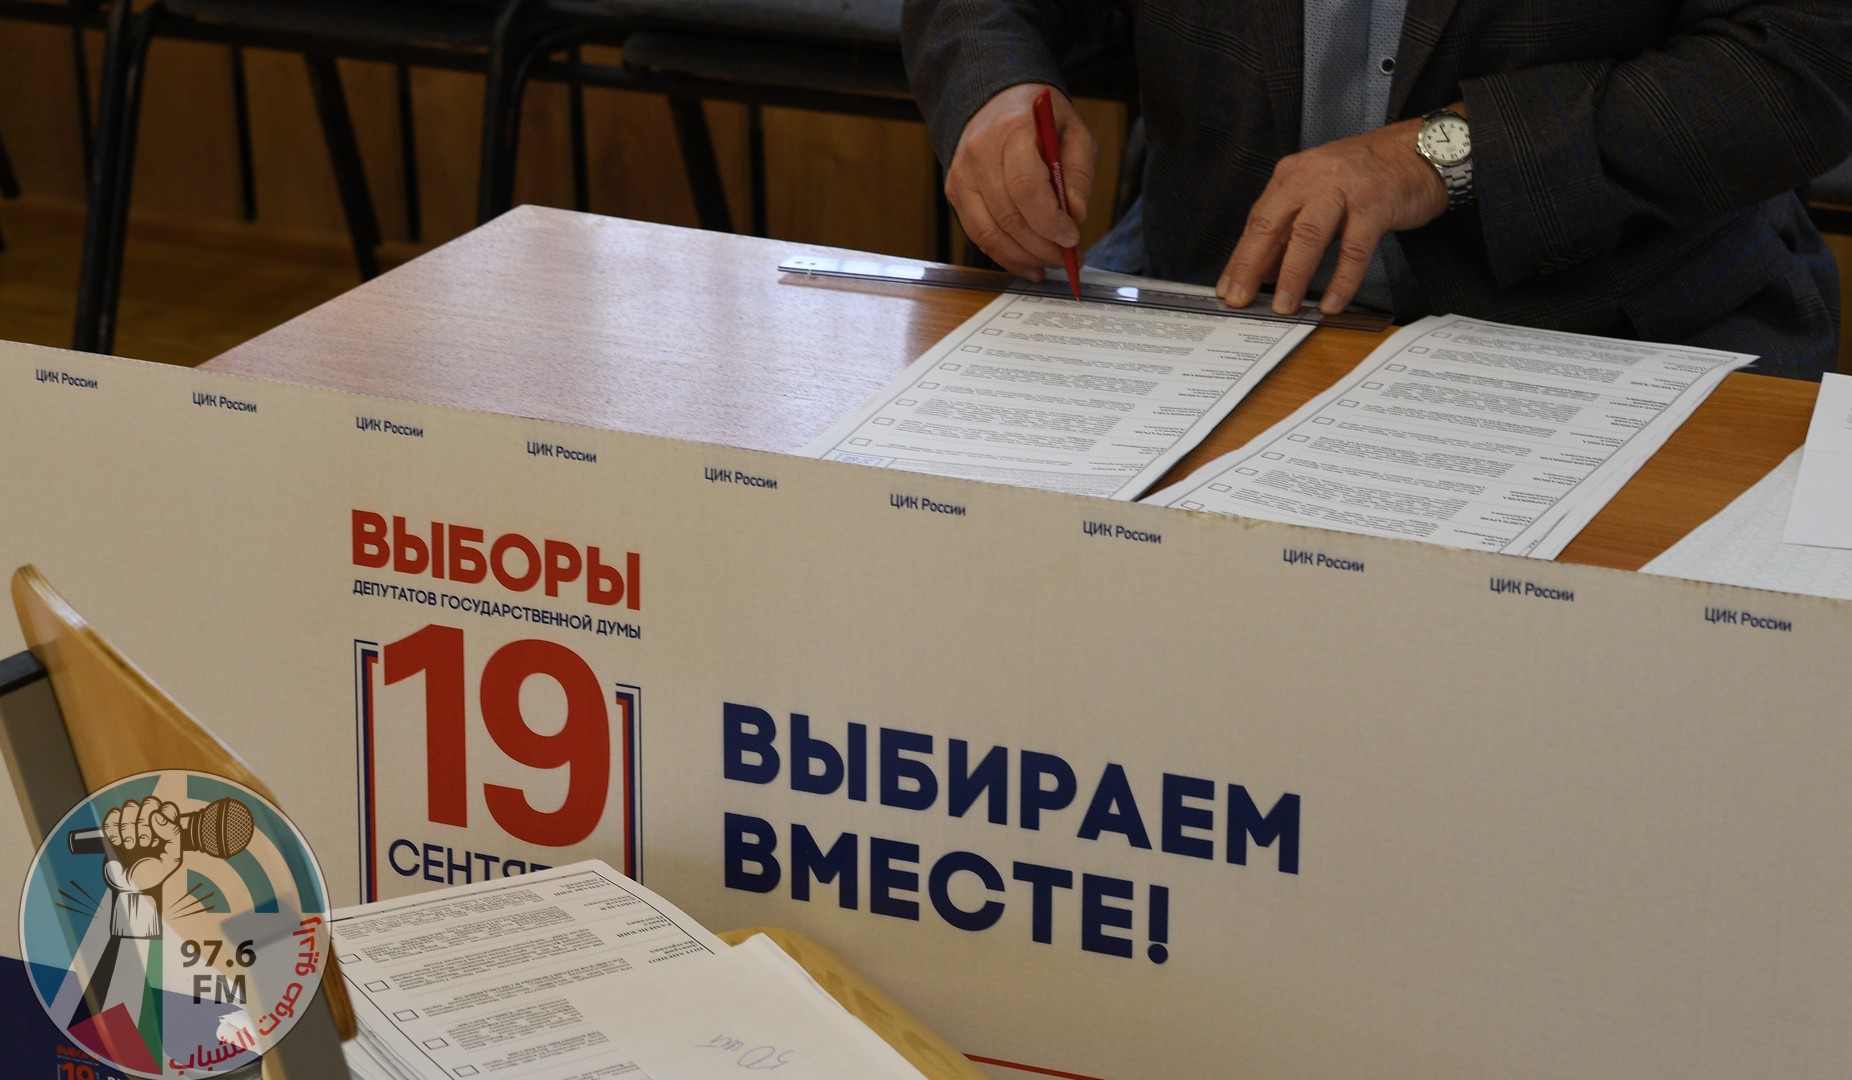 لأول مرة منذ عقود… خمسة أحزاب تدخل إلى الدوما الروسي و”روسيا الموحدة” يحصل على نحو 50%